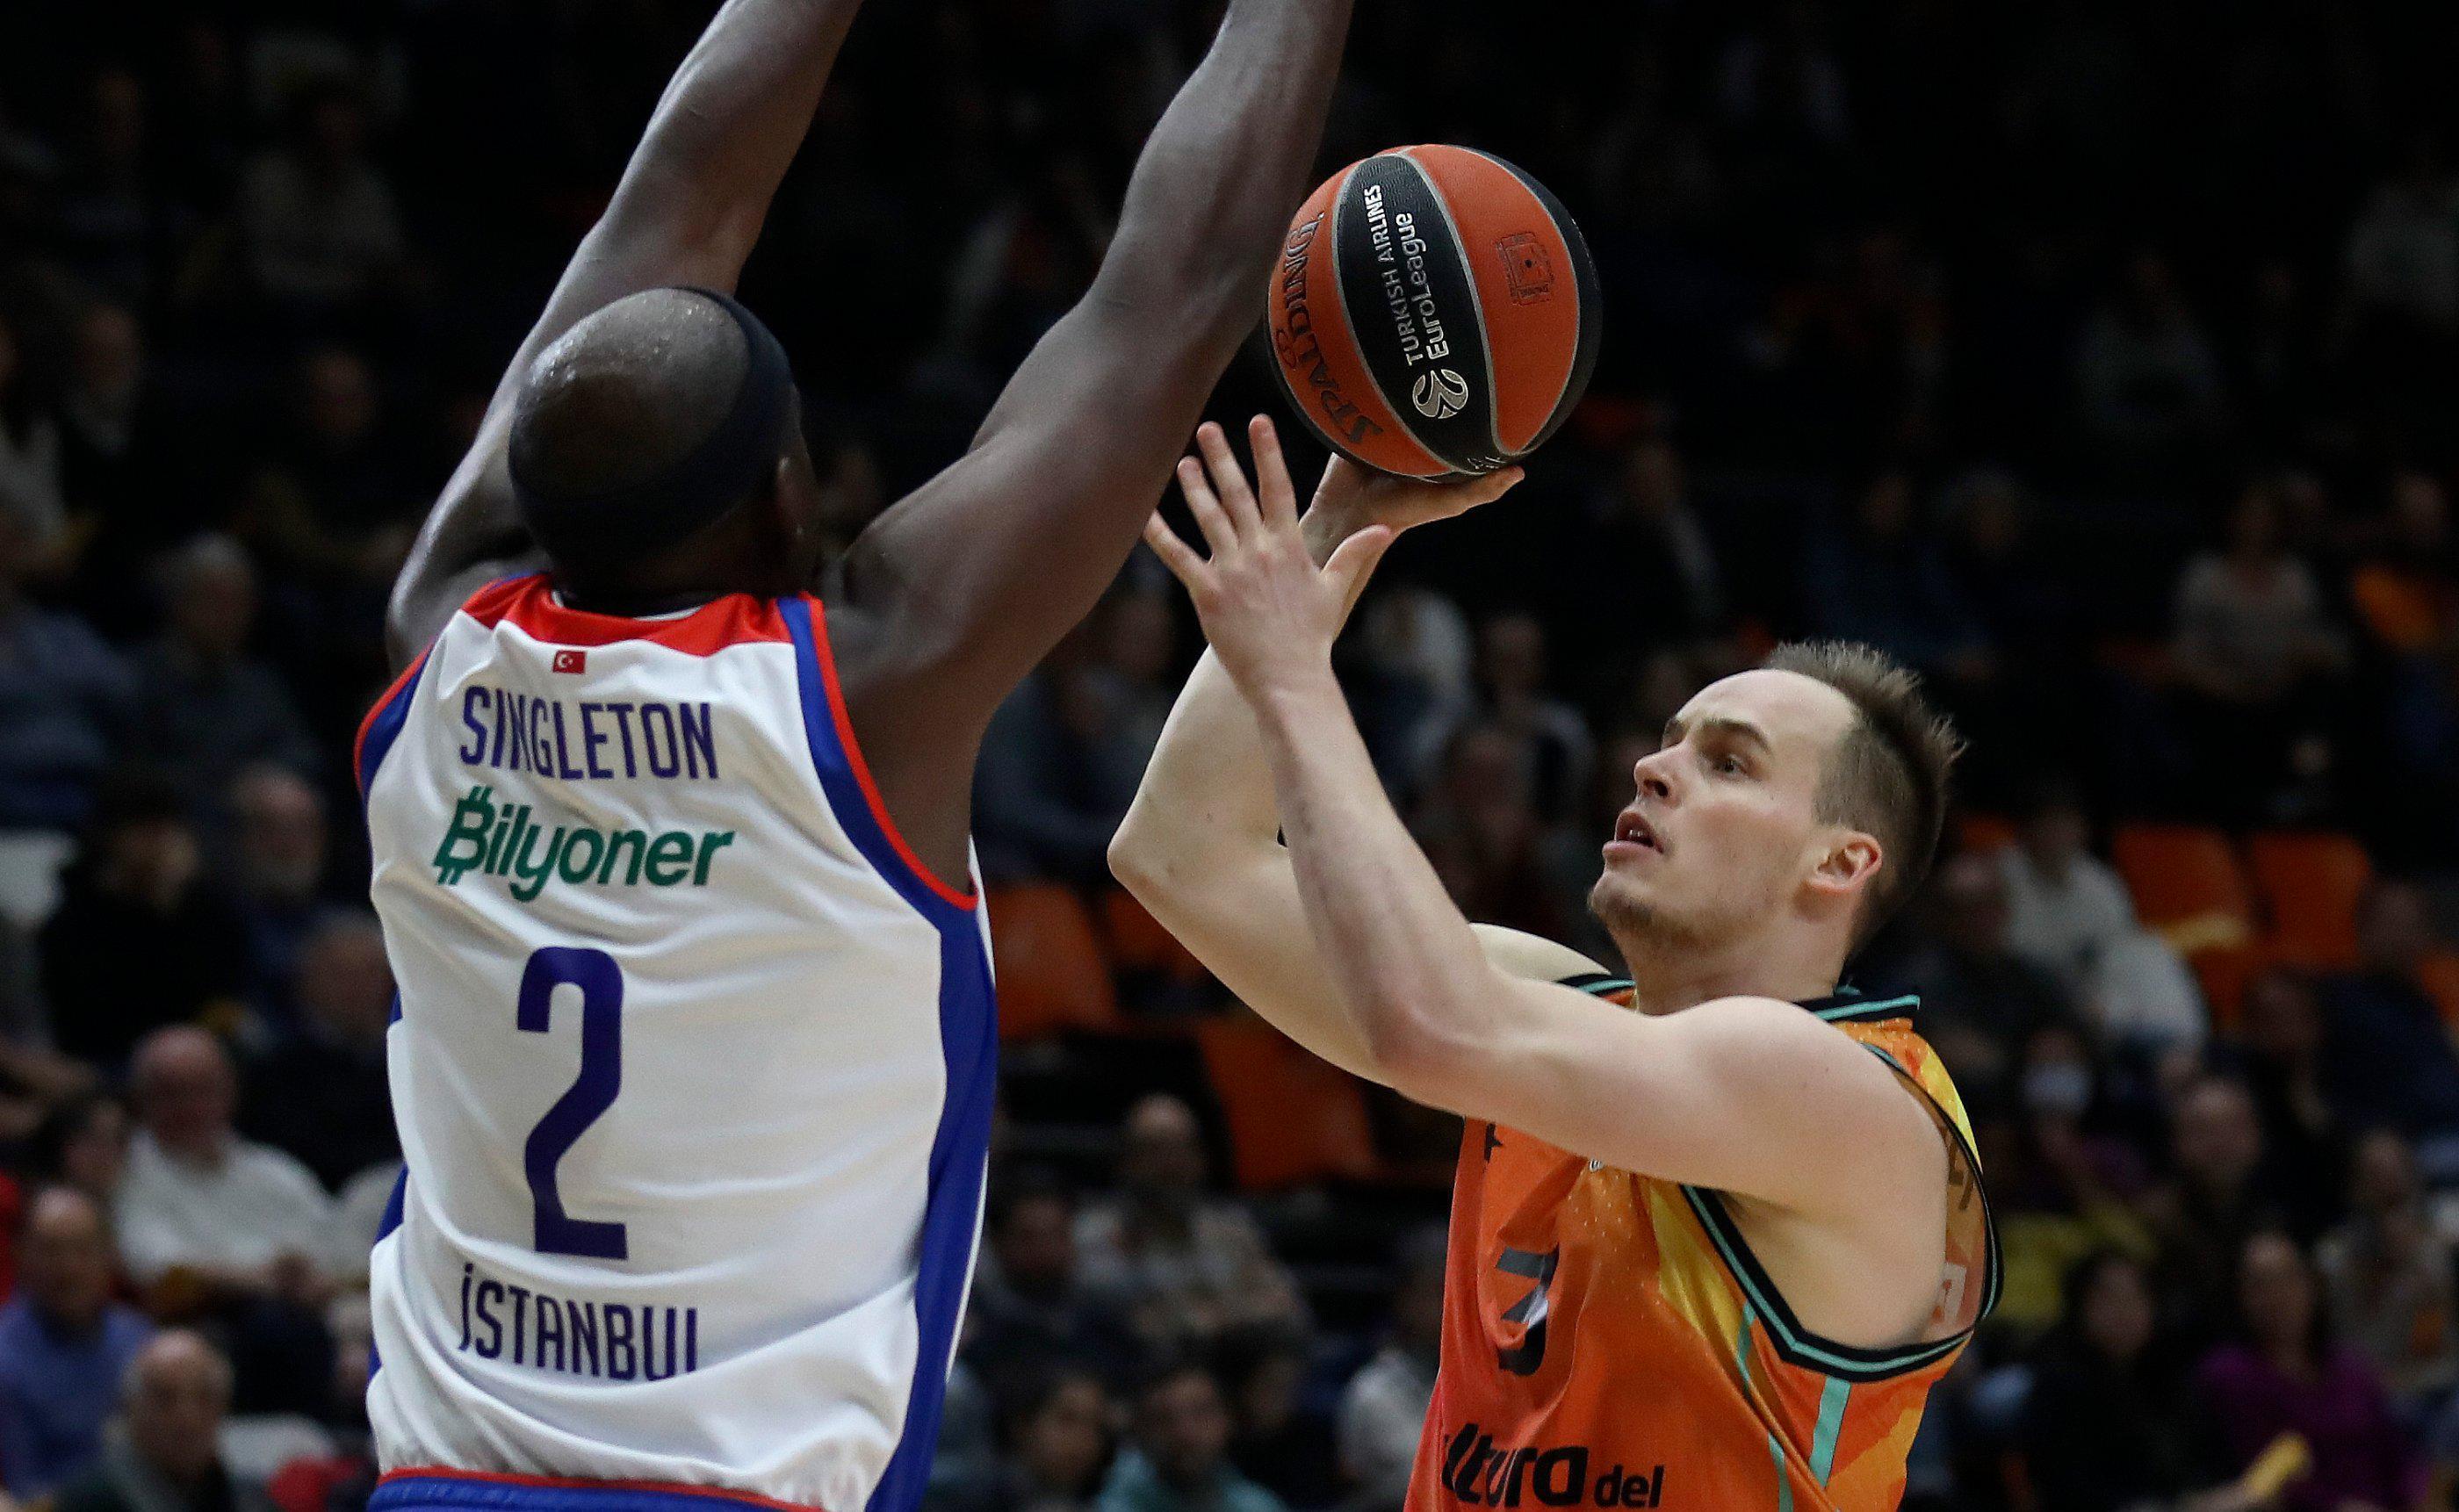 (ÖZET) Valencia Basket - Anadolu Efes maç sonucu: 81-71 | Son çeyrek kabusu sürüyor